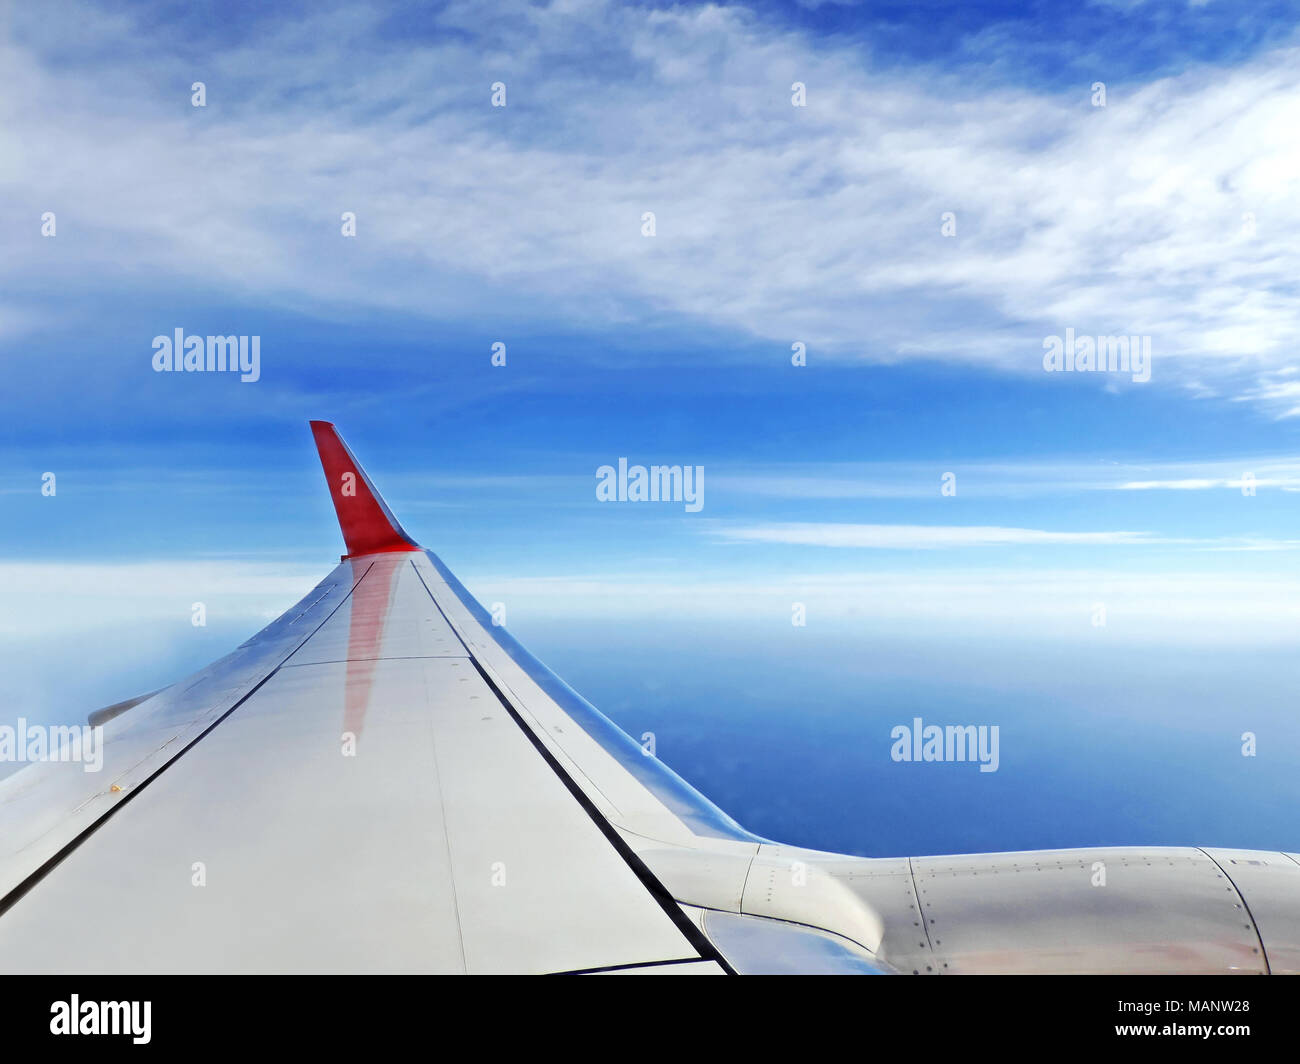 Flugzeug anzeigen, die mit dem Flugzeug anreisen. Blick nach draußen, ein Flugzeug Fenster zum Flugzeugflügel und blauen Himmel und Meer. Stockfoto